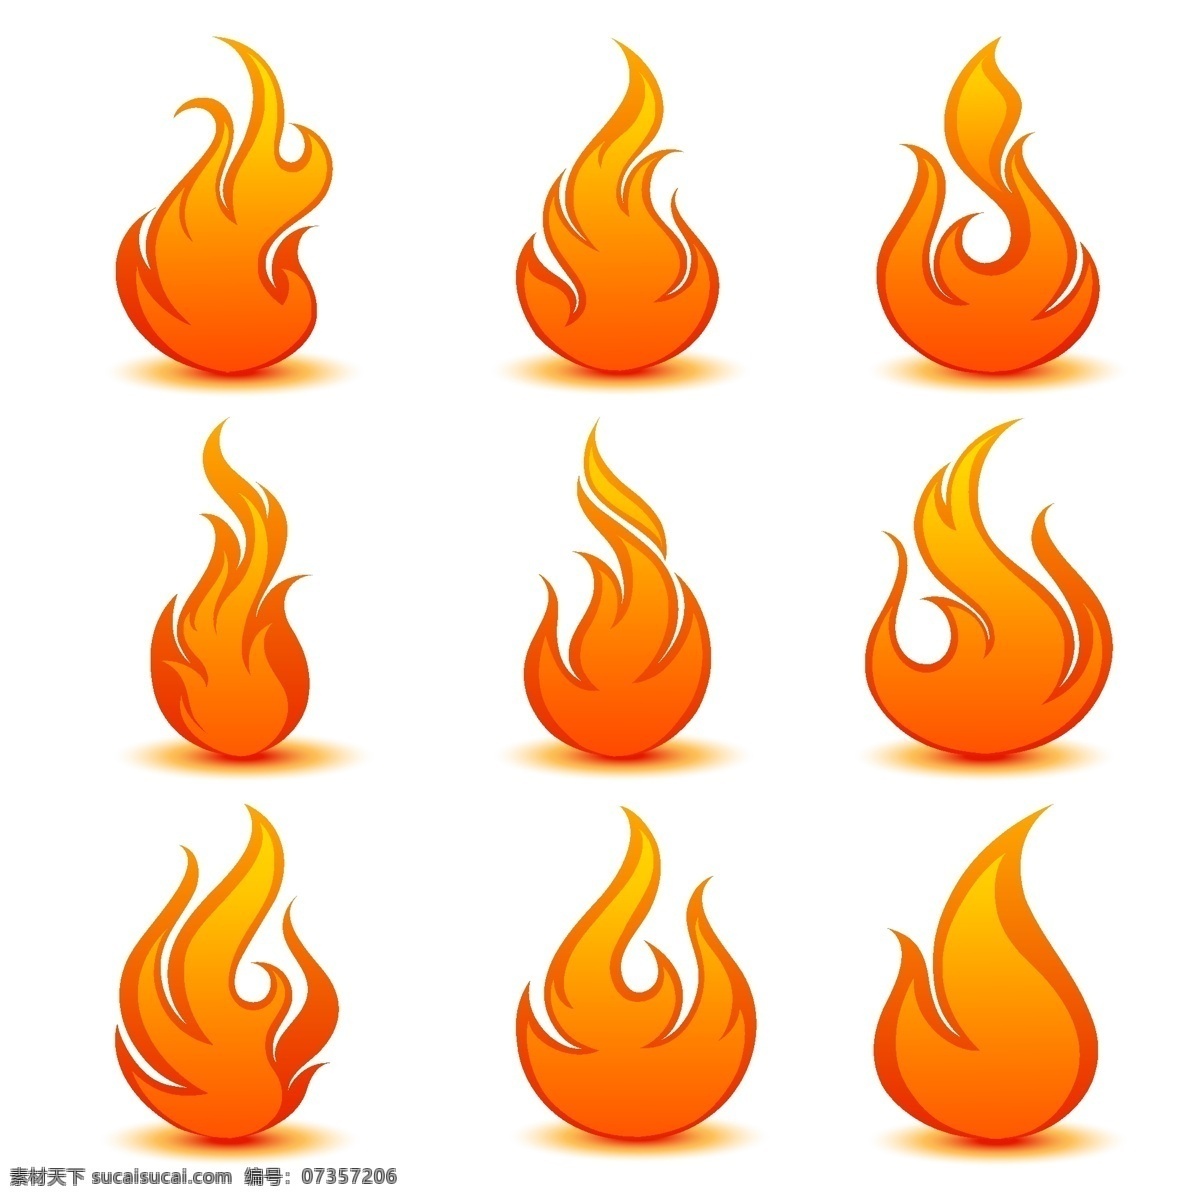 火焰标志 火焰 logo 矢量 图形